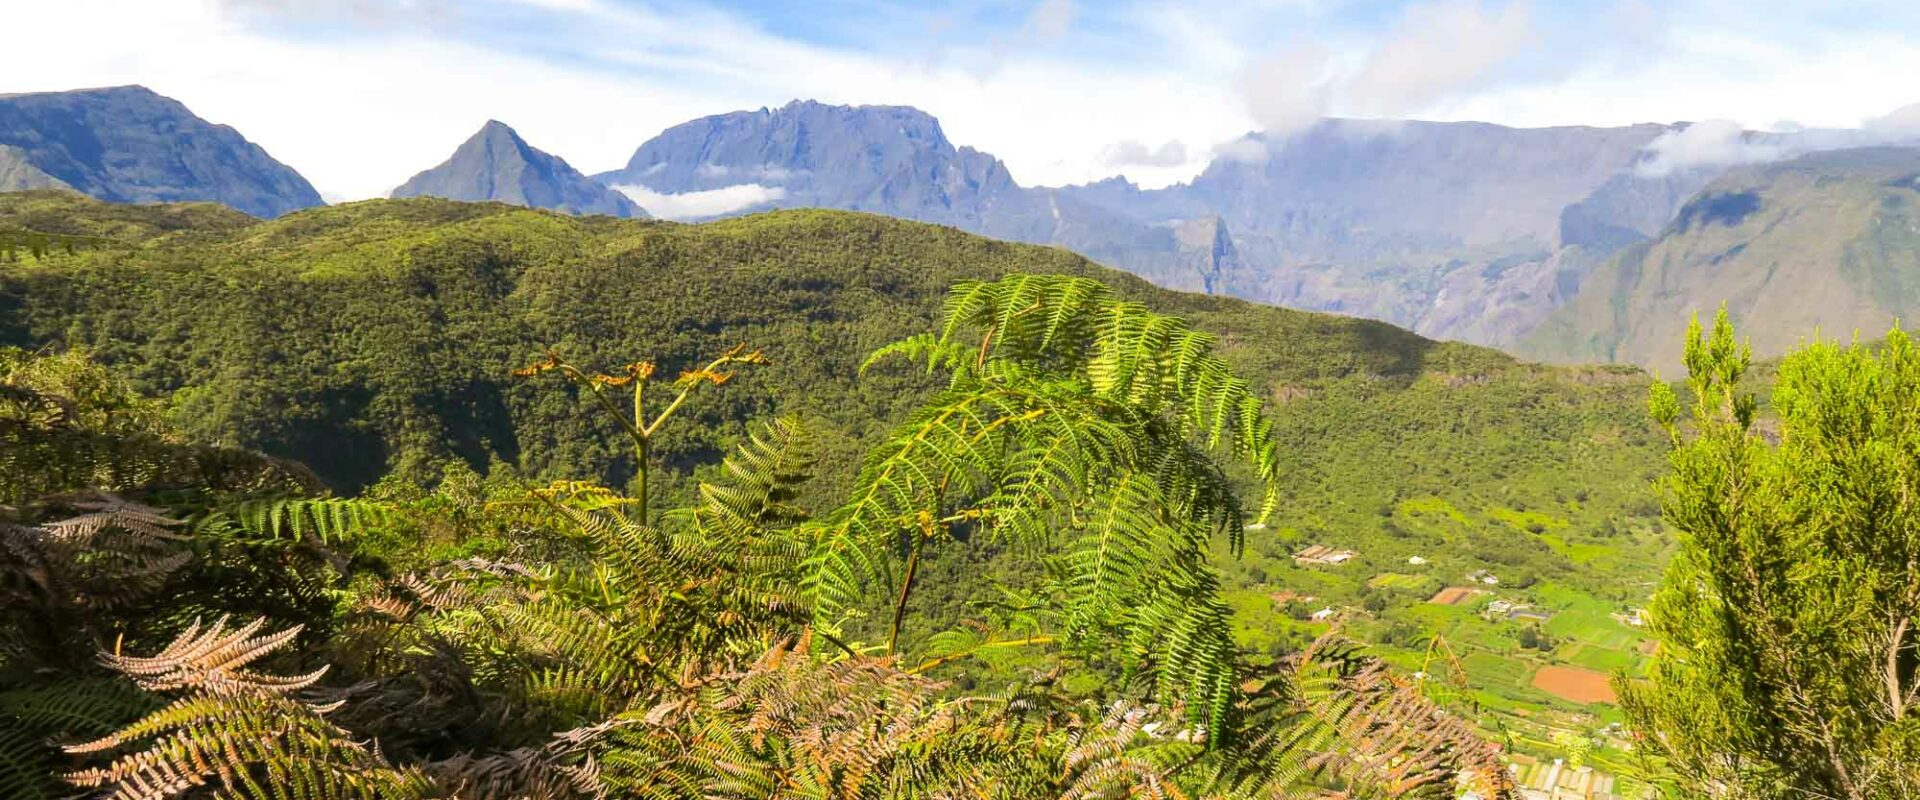 Les plus beaux sites de randonnée de la Réunion